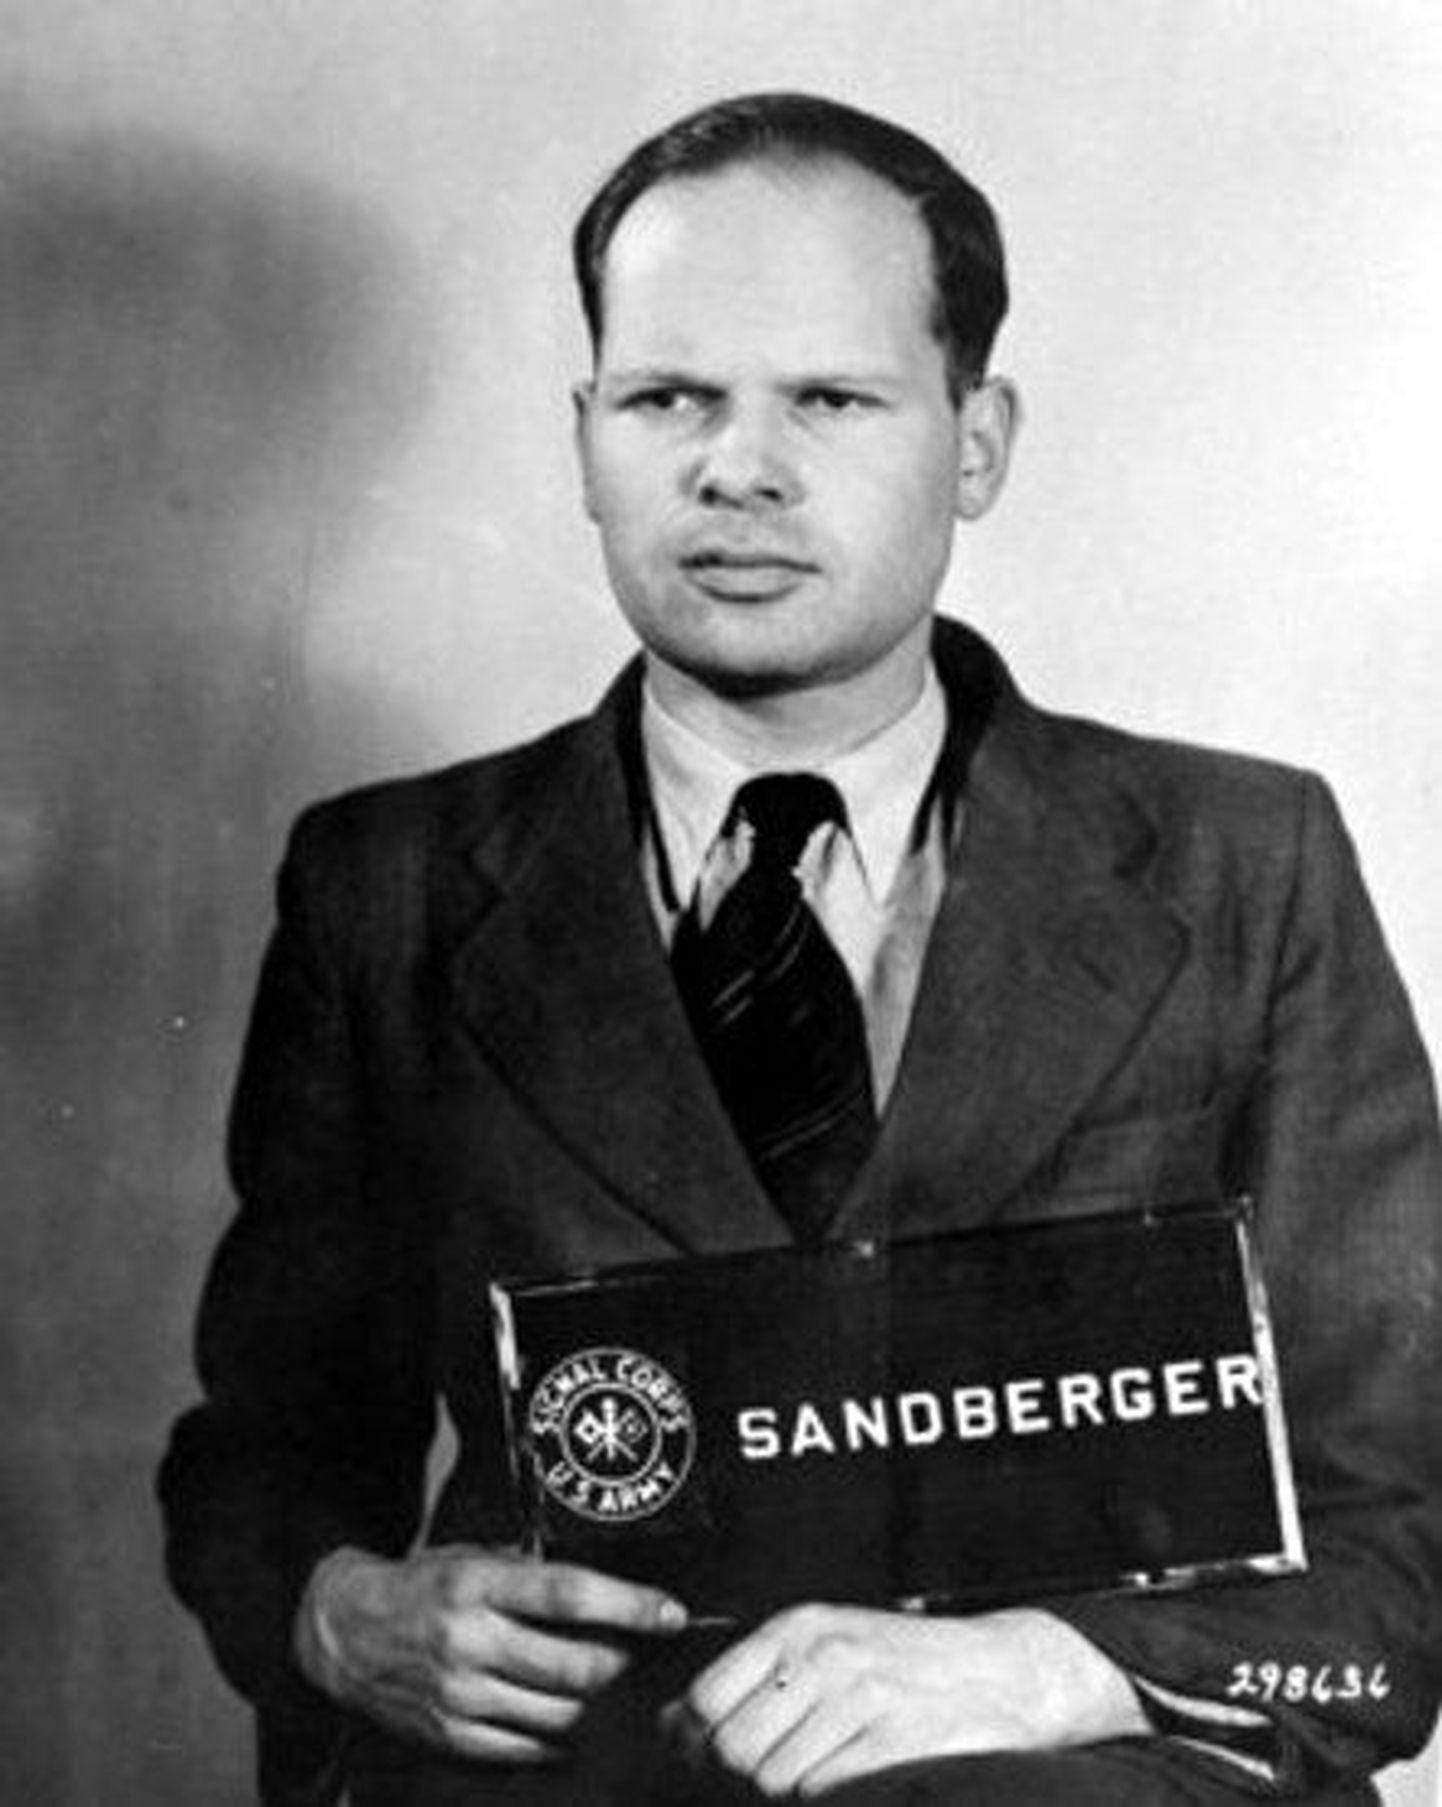 SS-Standartenführer dr Martin Sandberger